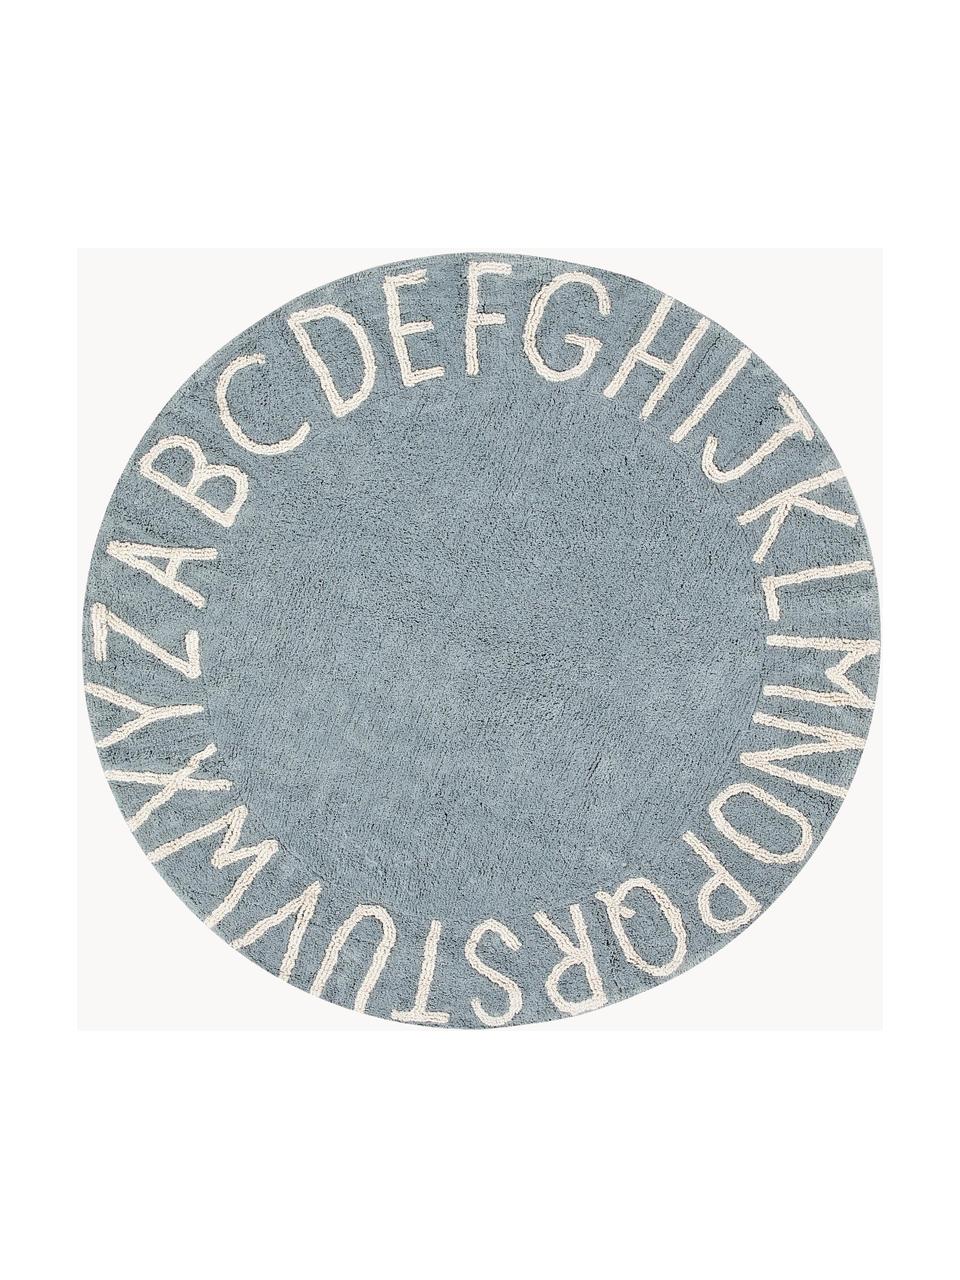 Runder Kinderteppich ABC mit Buchstaben Design, Recycelte Baumwolle (80% Baumwolle, 20% andere Fasern), Graublau, Ø 150 cm (Größe M)